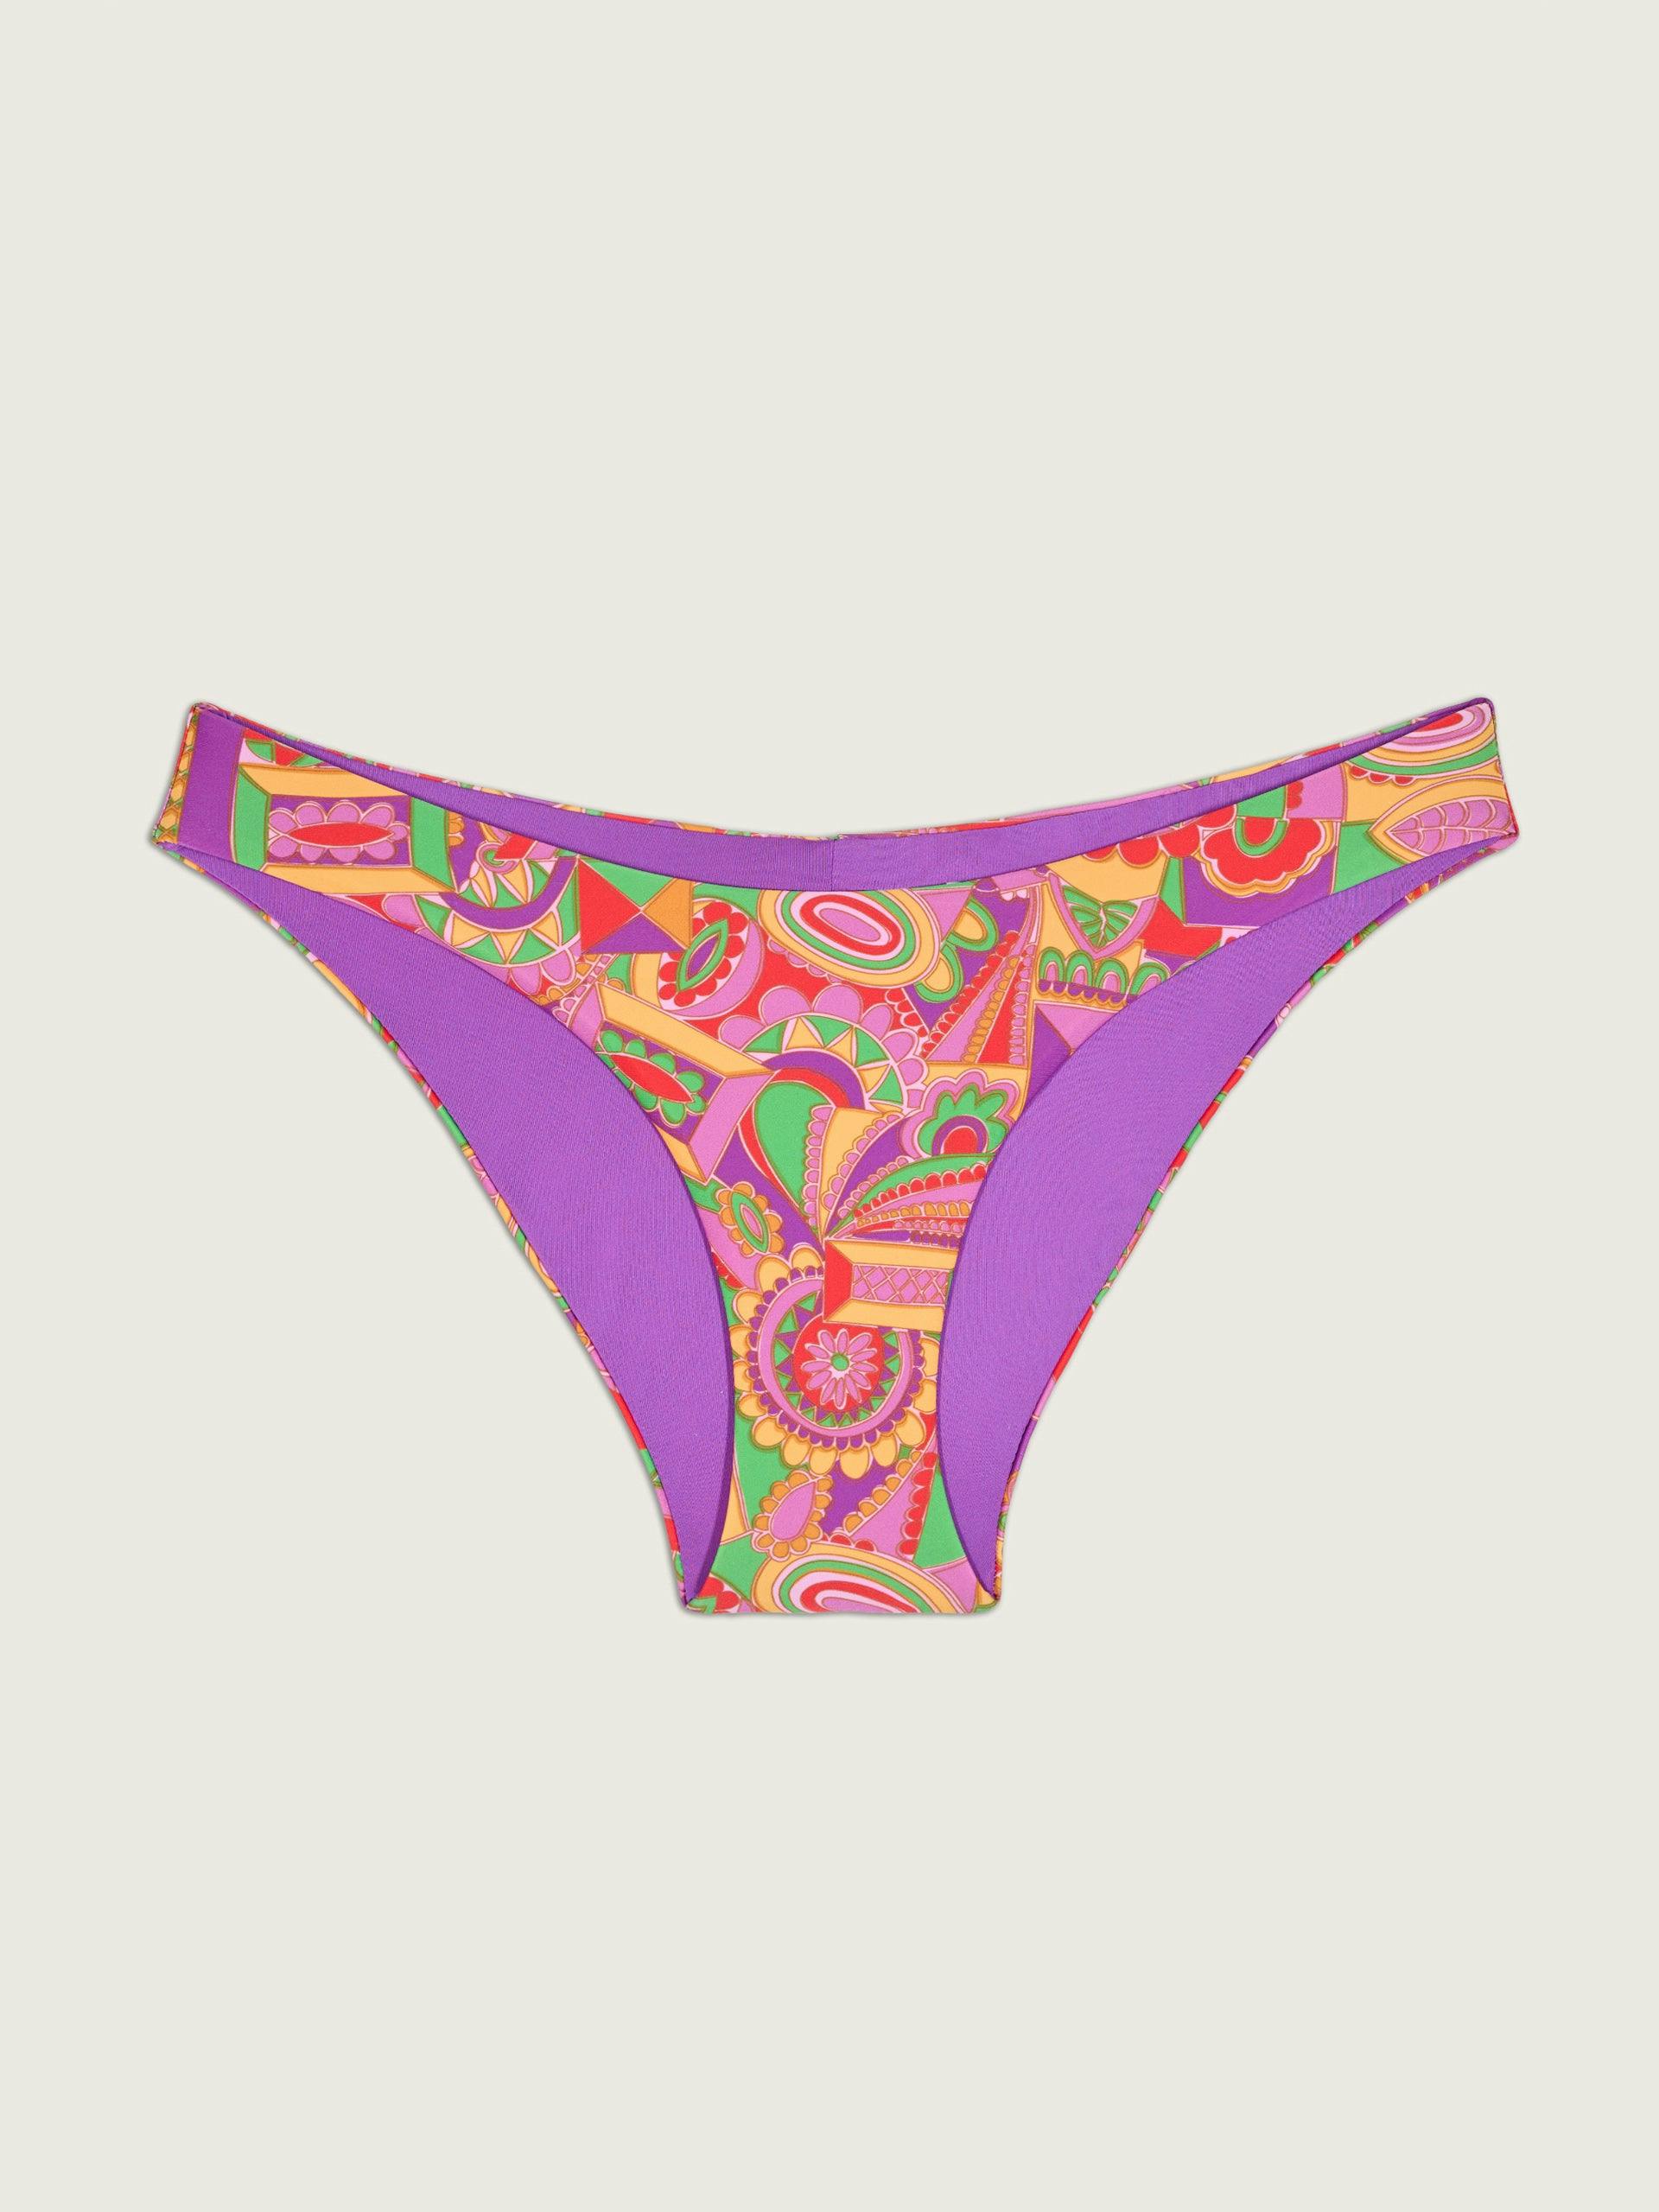 Pink floral-print bikini bottoms